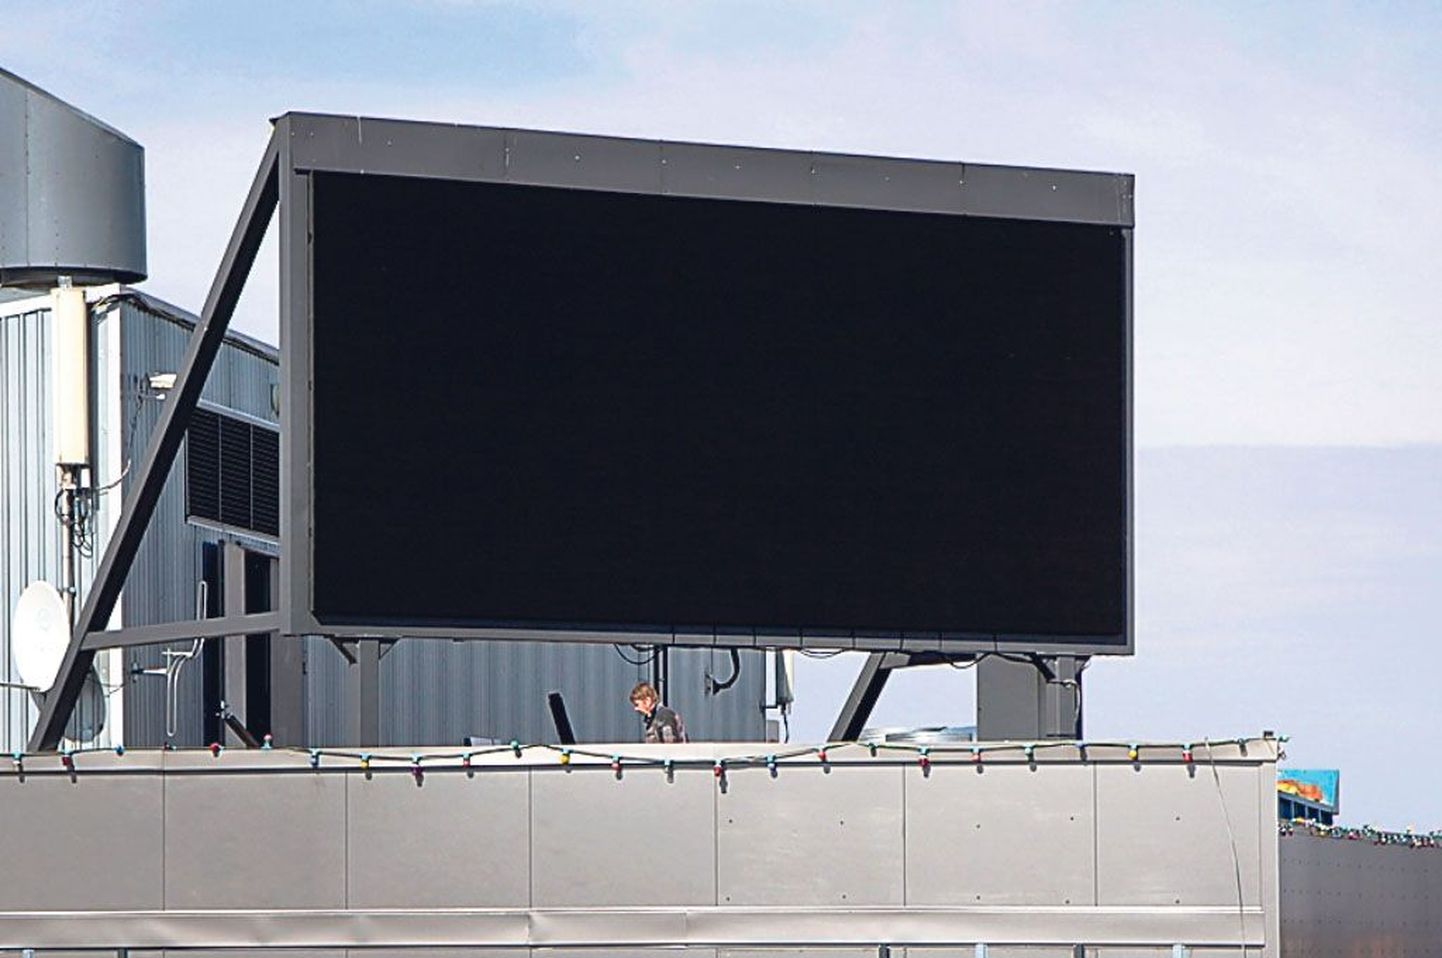 Praegu on autojuhtidele mõeldud Port Artur 1 katusel asuv reklaamekraan.